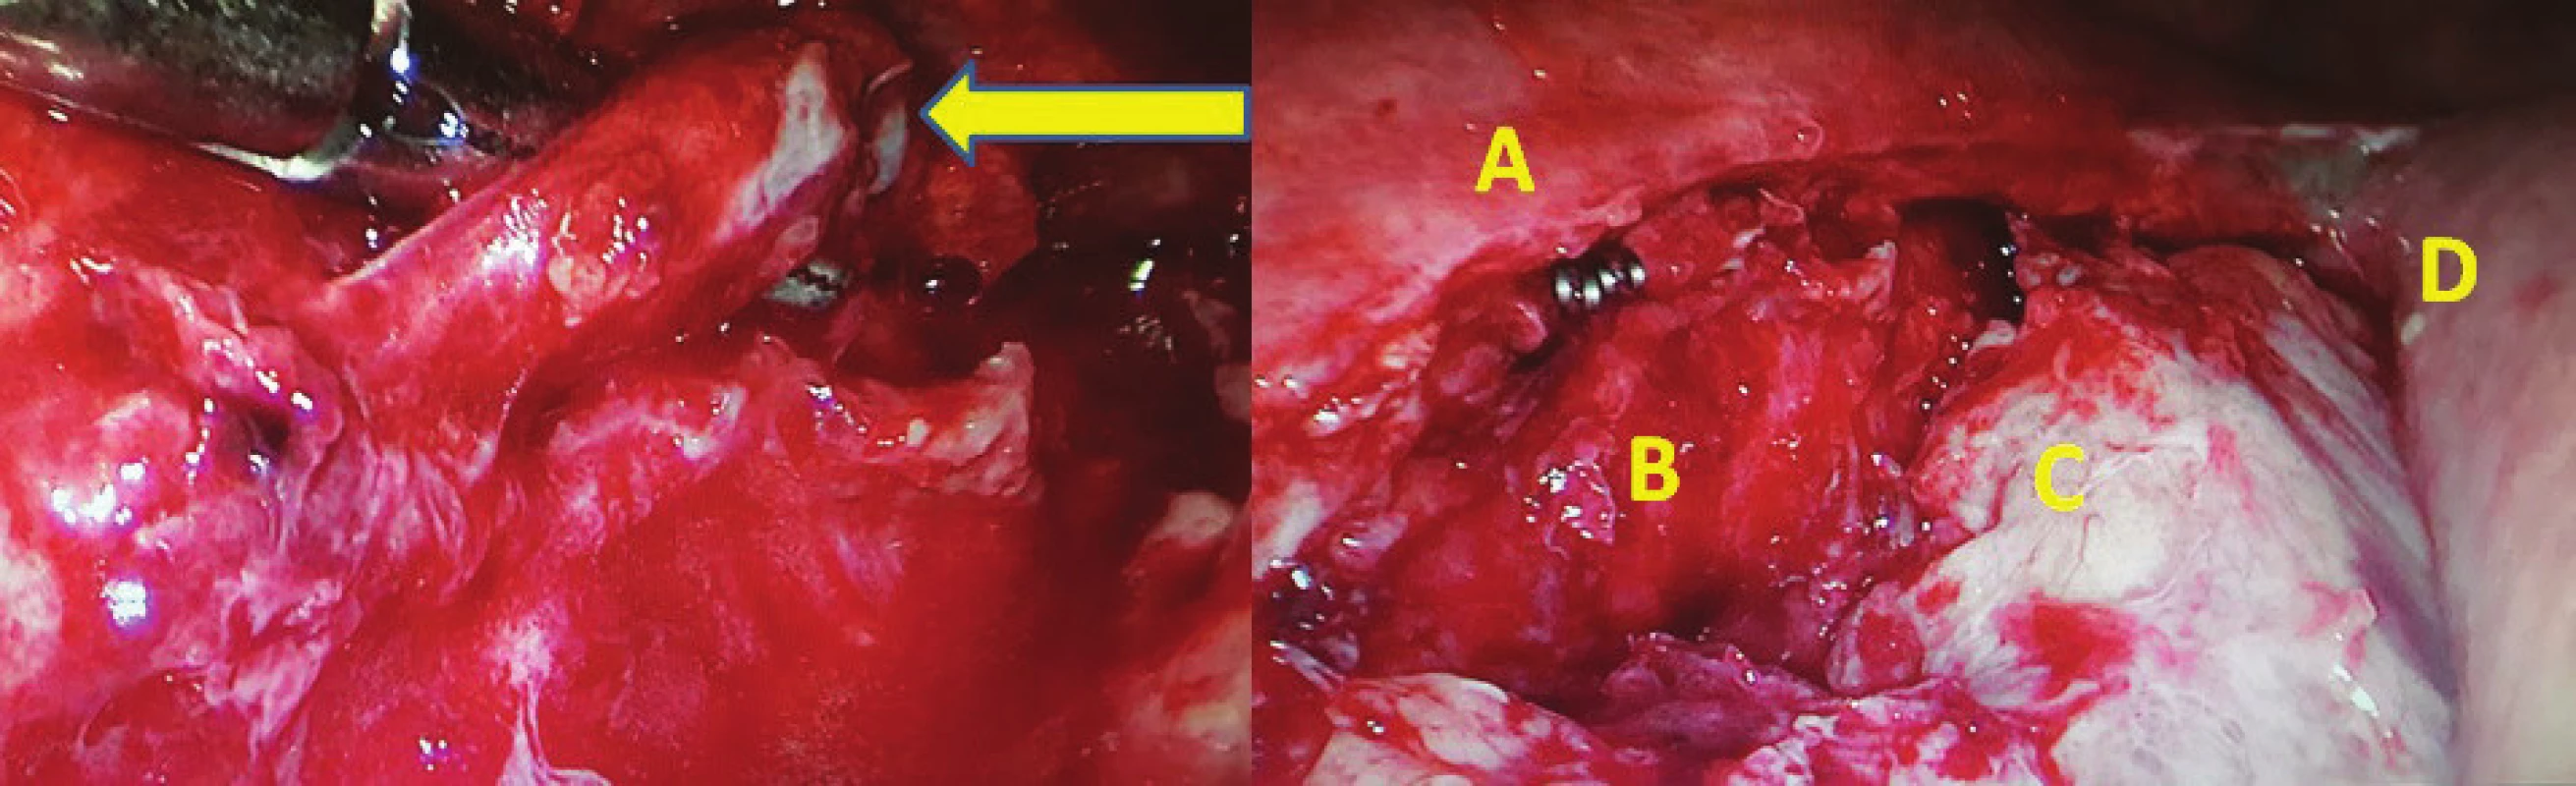 vlevo – torakoskopická revize 8. pooperační den po Ivor-Lewisově ezofagektomii s chylothoraxem (pronační
poloha pacienta), žlutá šipka označuje nástěnné poranění DT; vpravo: A ošetření leze klipem, B descendentní
aorta, C fibrinem krytý plicní hilus, D žaludeční tubus využitý k rekonstrukci<br>
Fig. 2: left – thoracoscopic revision on 8th postoperative day after Ivor-Lewis esophagectomy for chylothorax
(prone position), yellow arrow showing tangential injury of the thoracic duct, right: Double clip on the duplication
of DT, B descending aorta, C pulmonary hilus covered with fibrin, D gastric tube used for GI reconstruction